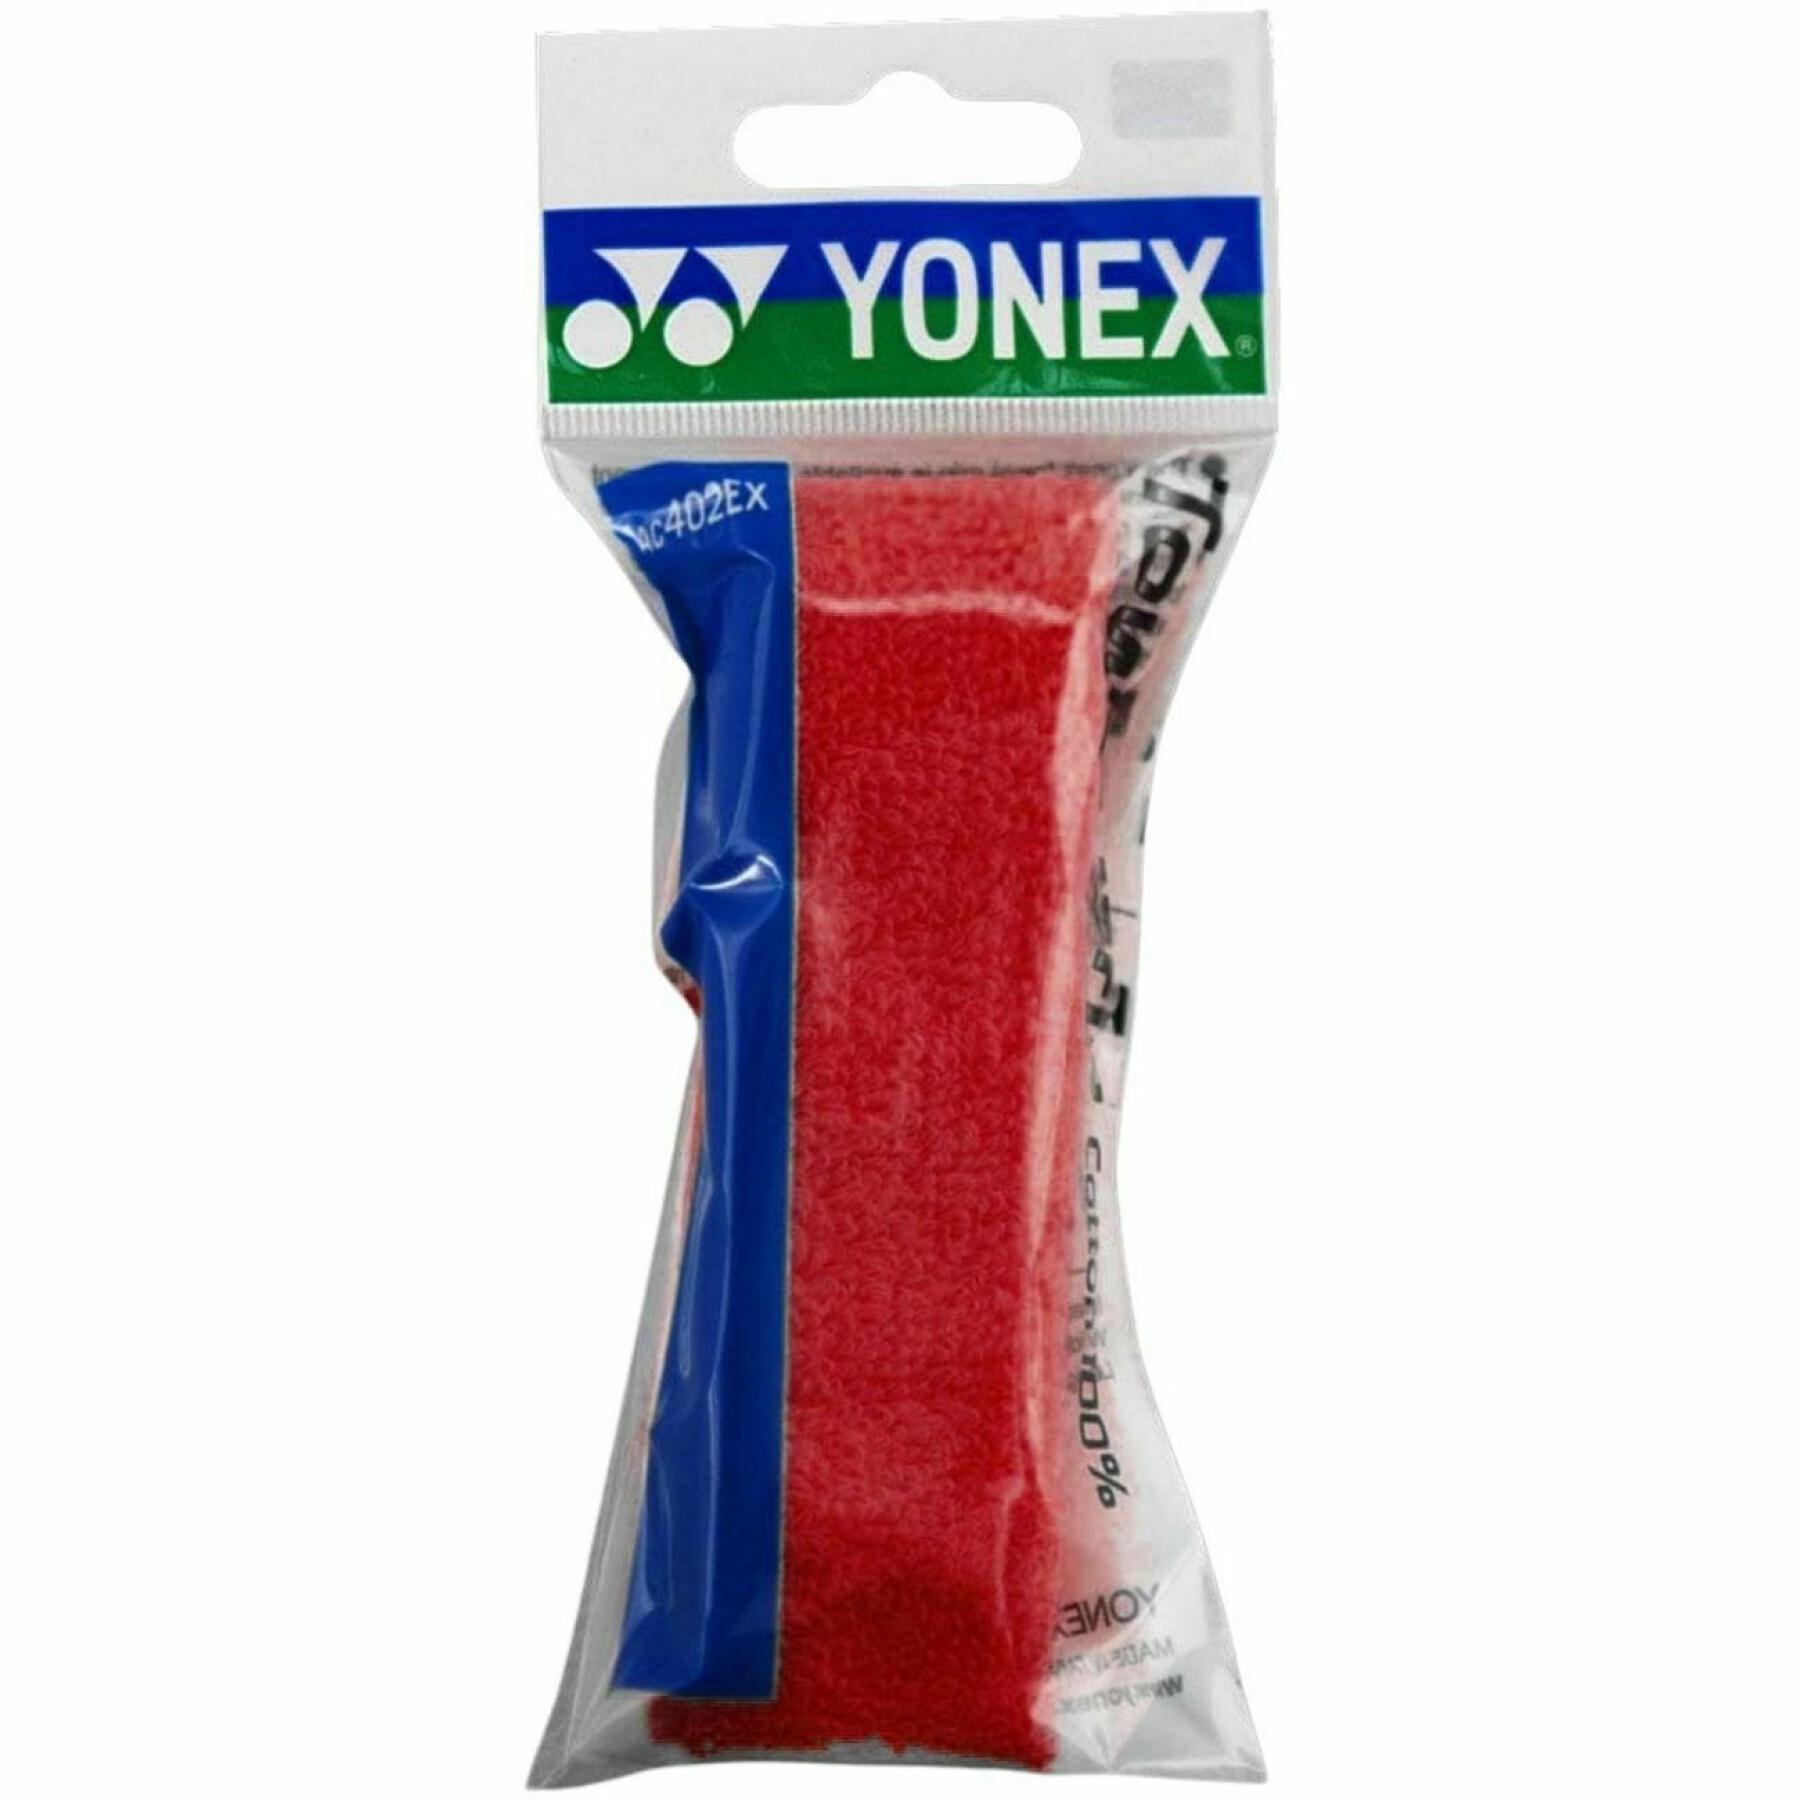 Punho de esponja Yonex ac402ex